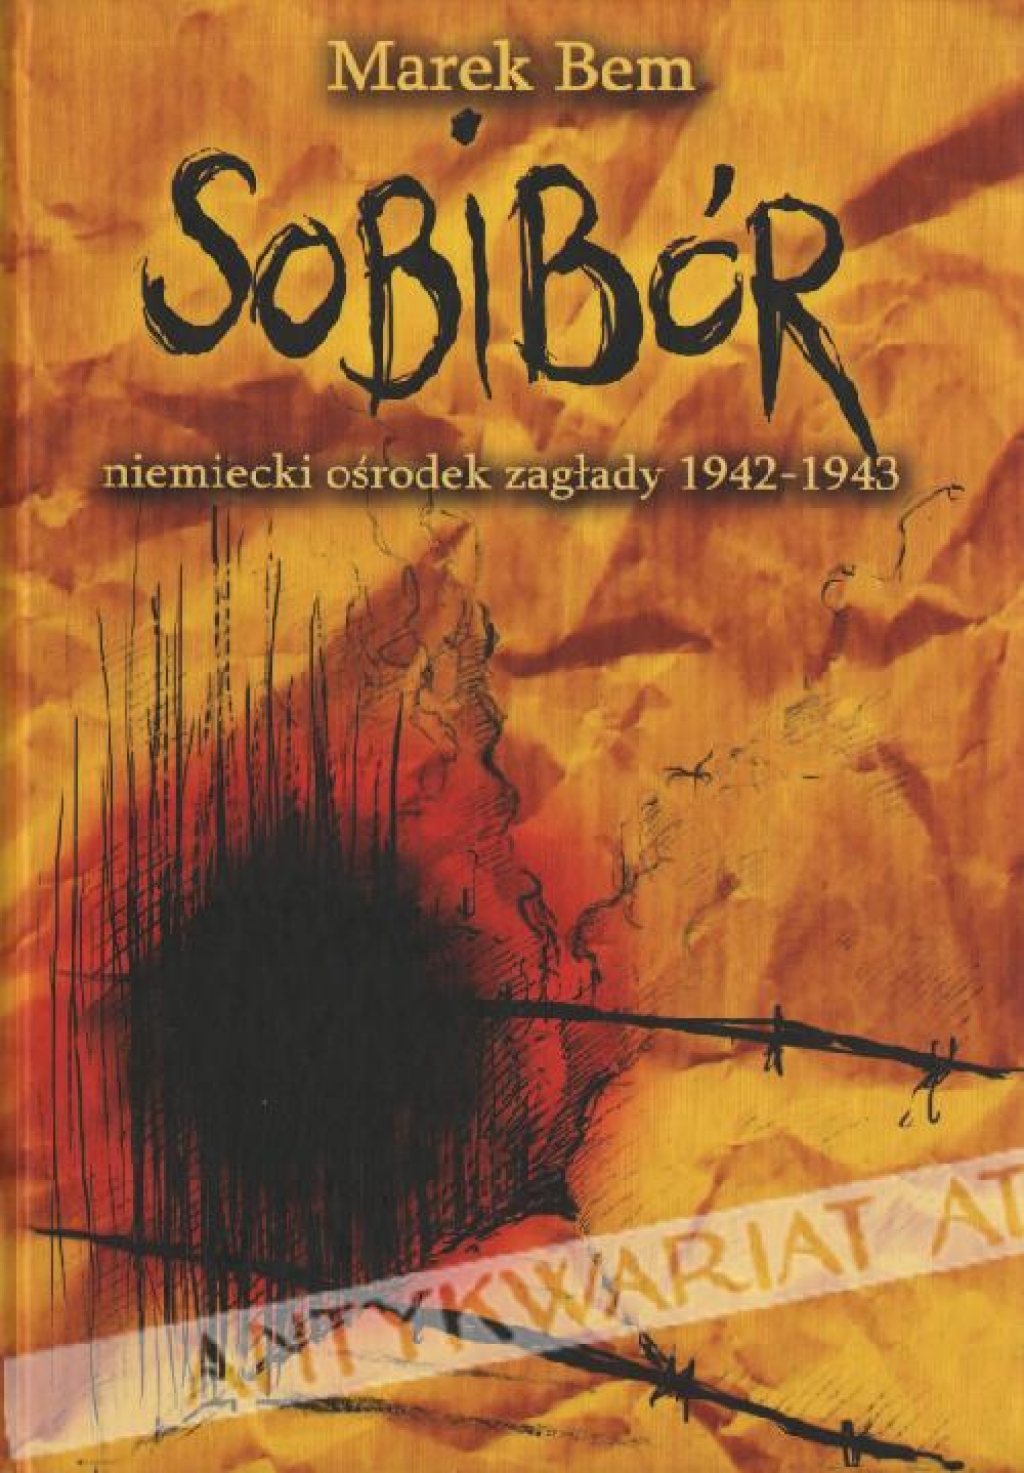 Sobibór - niemiecki ośrodek zagłady 1942-1943